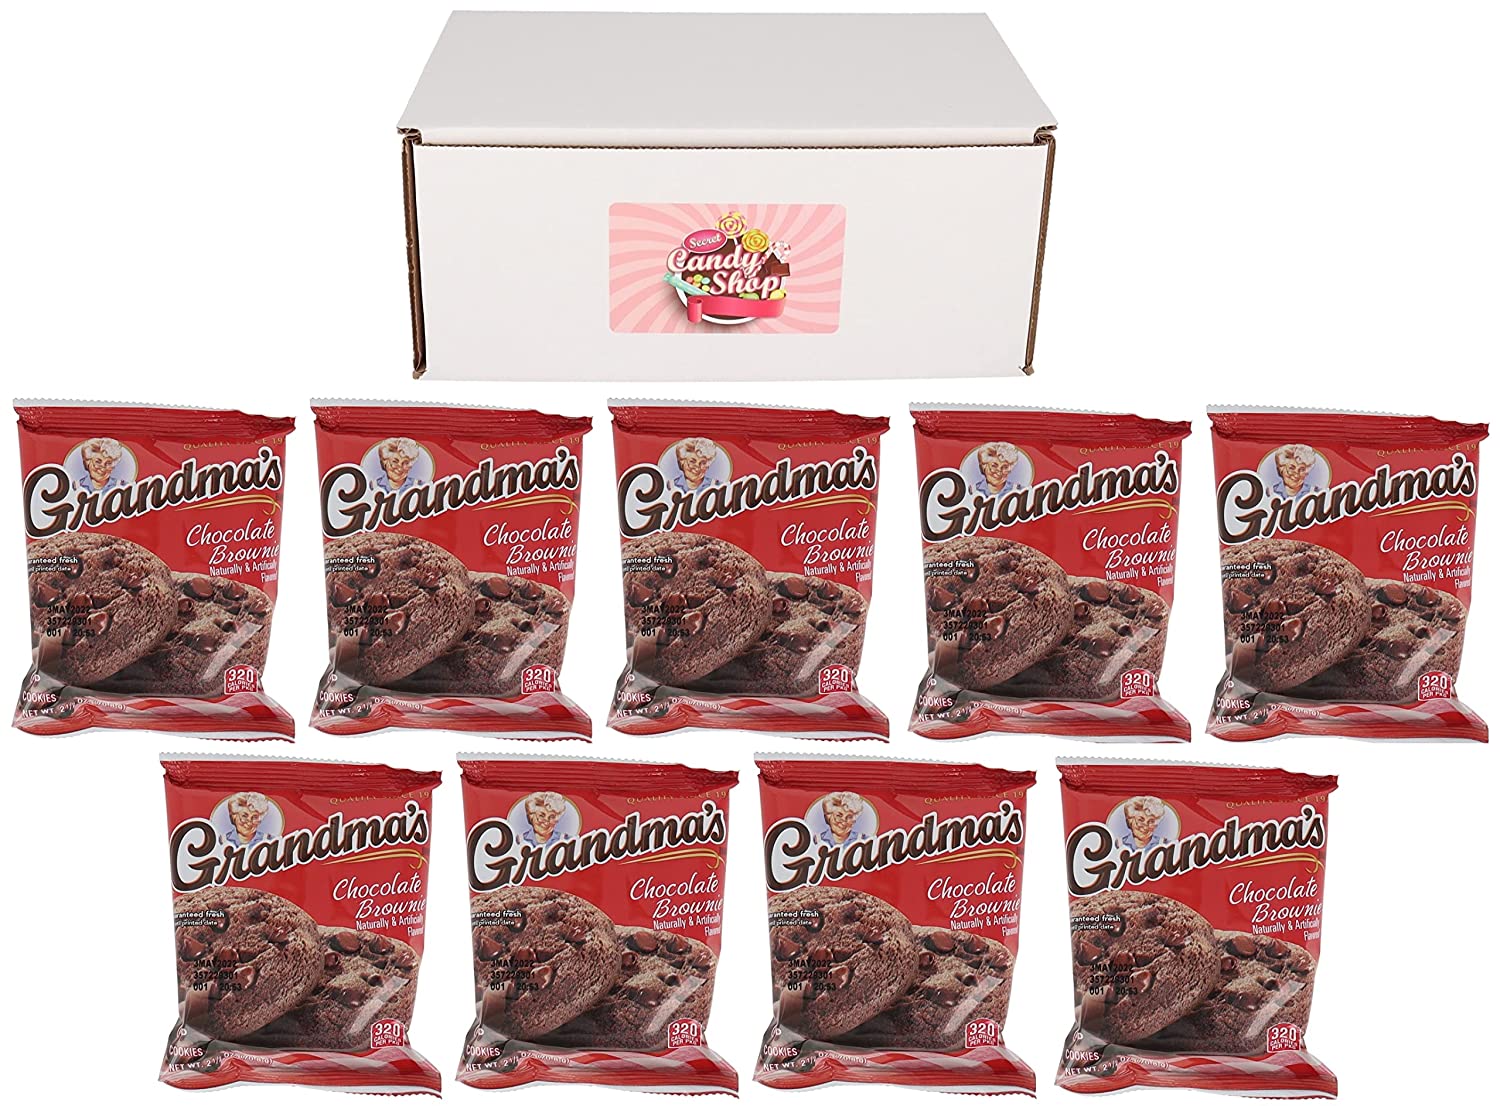 Grandma's Cookies In Box (Pack of 9, total 18 Cookies)